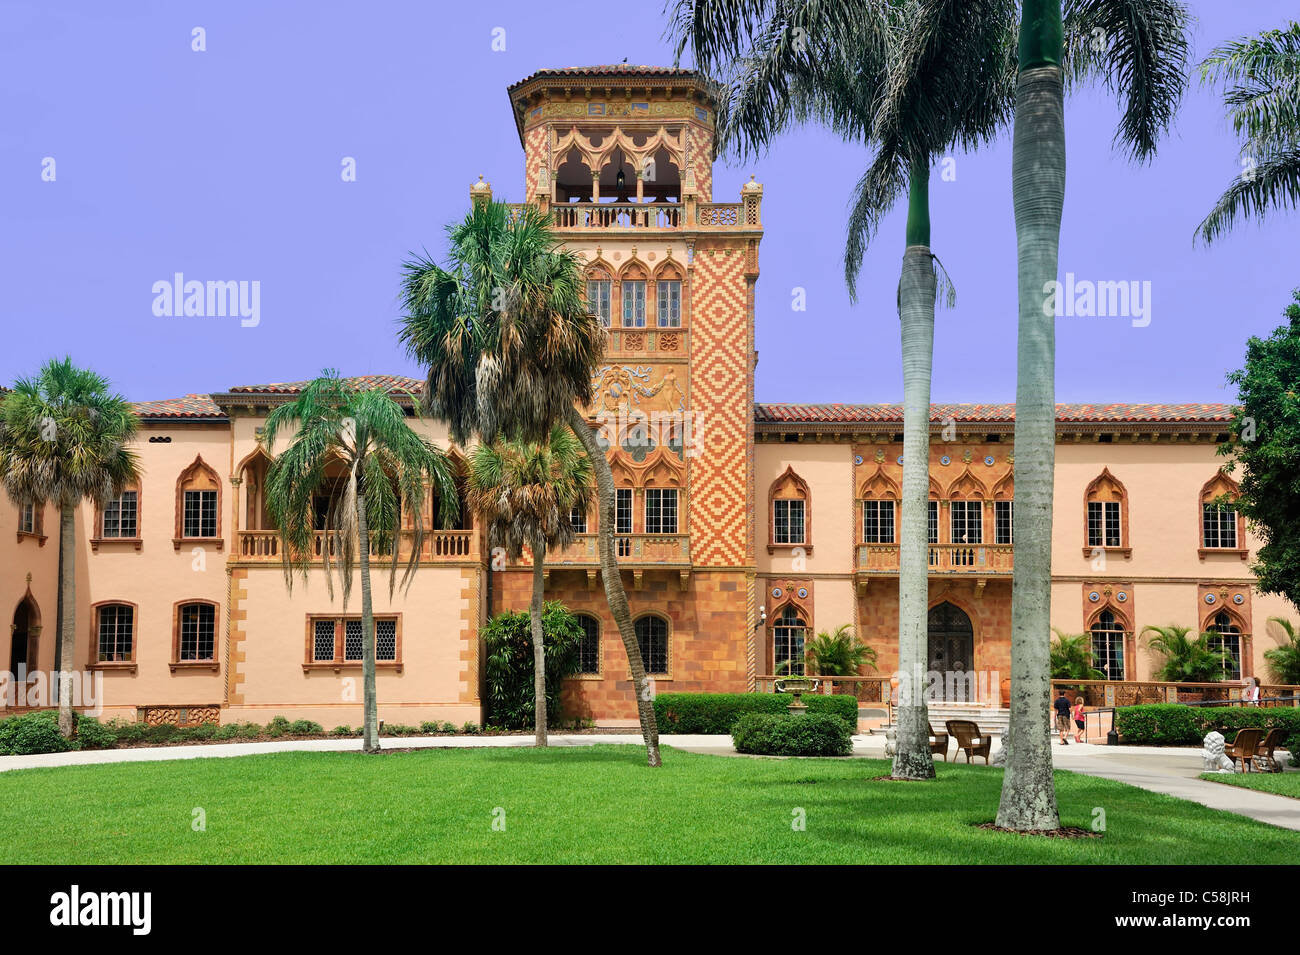 Museo, Sarasota Bay, il Ringling Mansion, John e Mable Ringling Museum of Art di Sarasota, Florida, Stati Uniti d'America, Stati Uniti, America, m Foto Stock